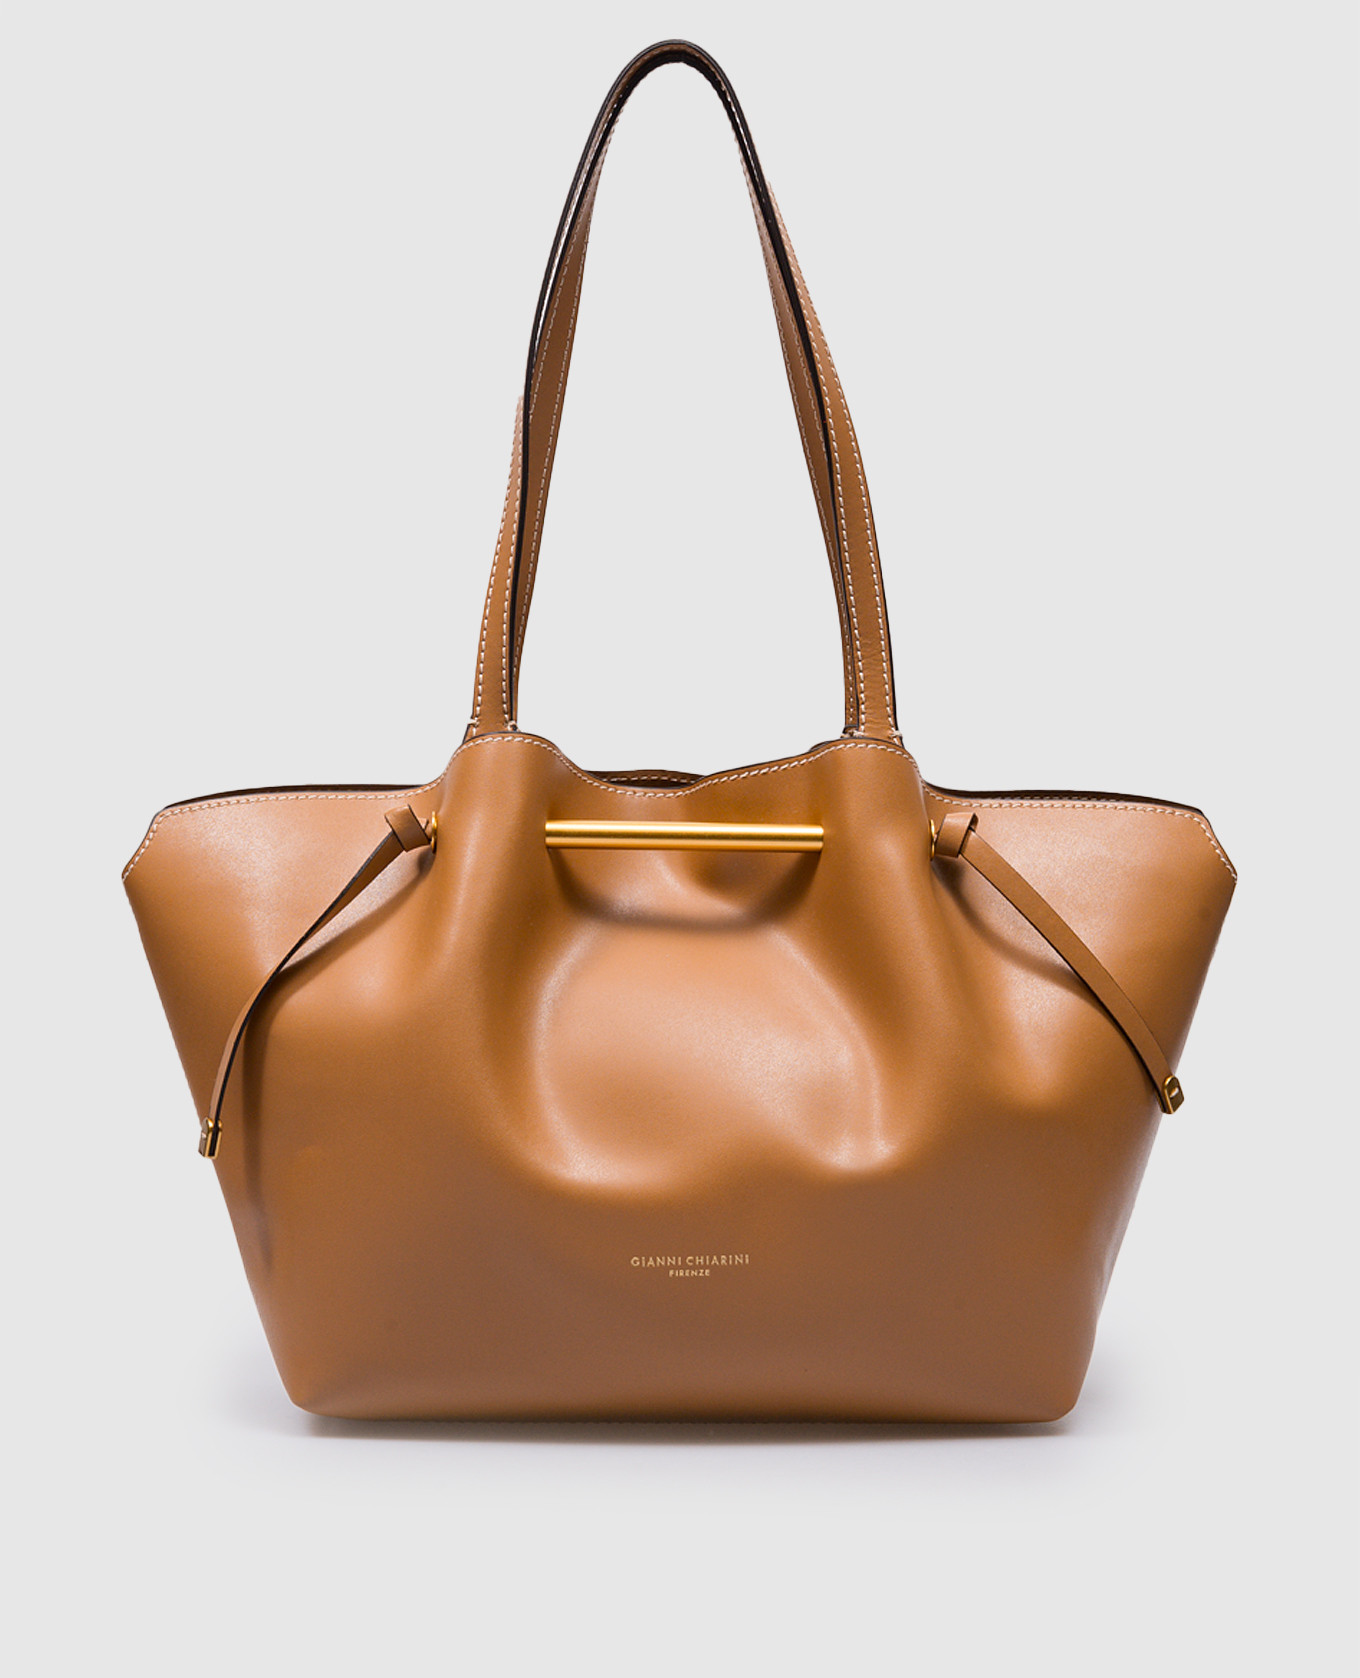 Amanda brown leather tote bag